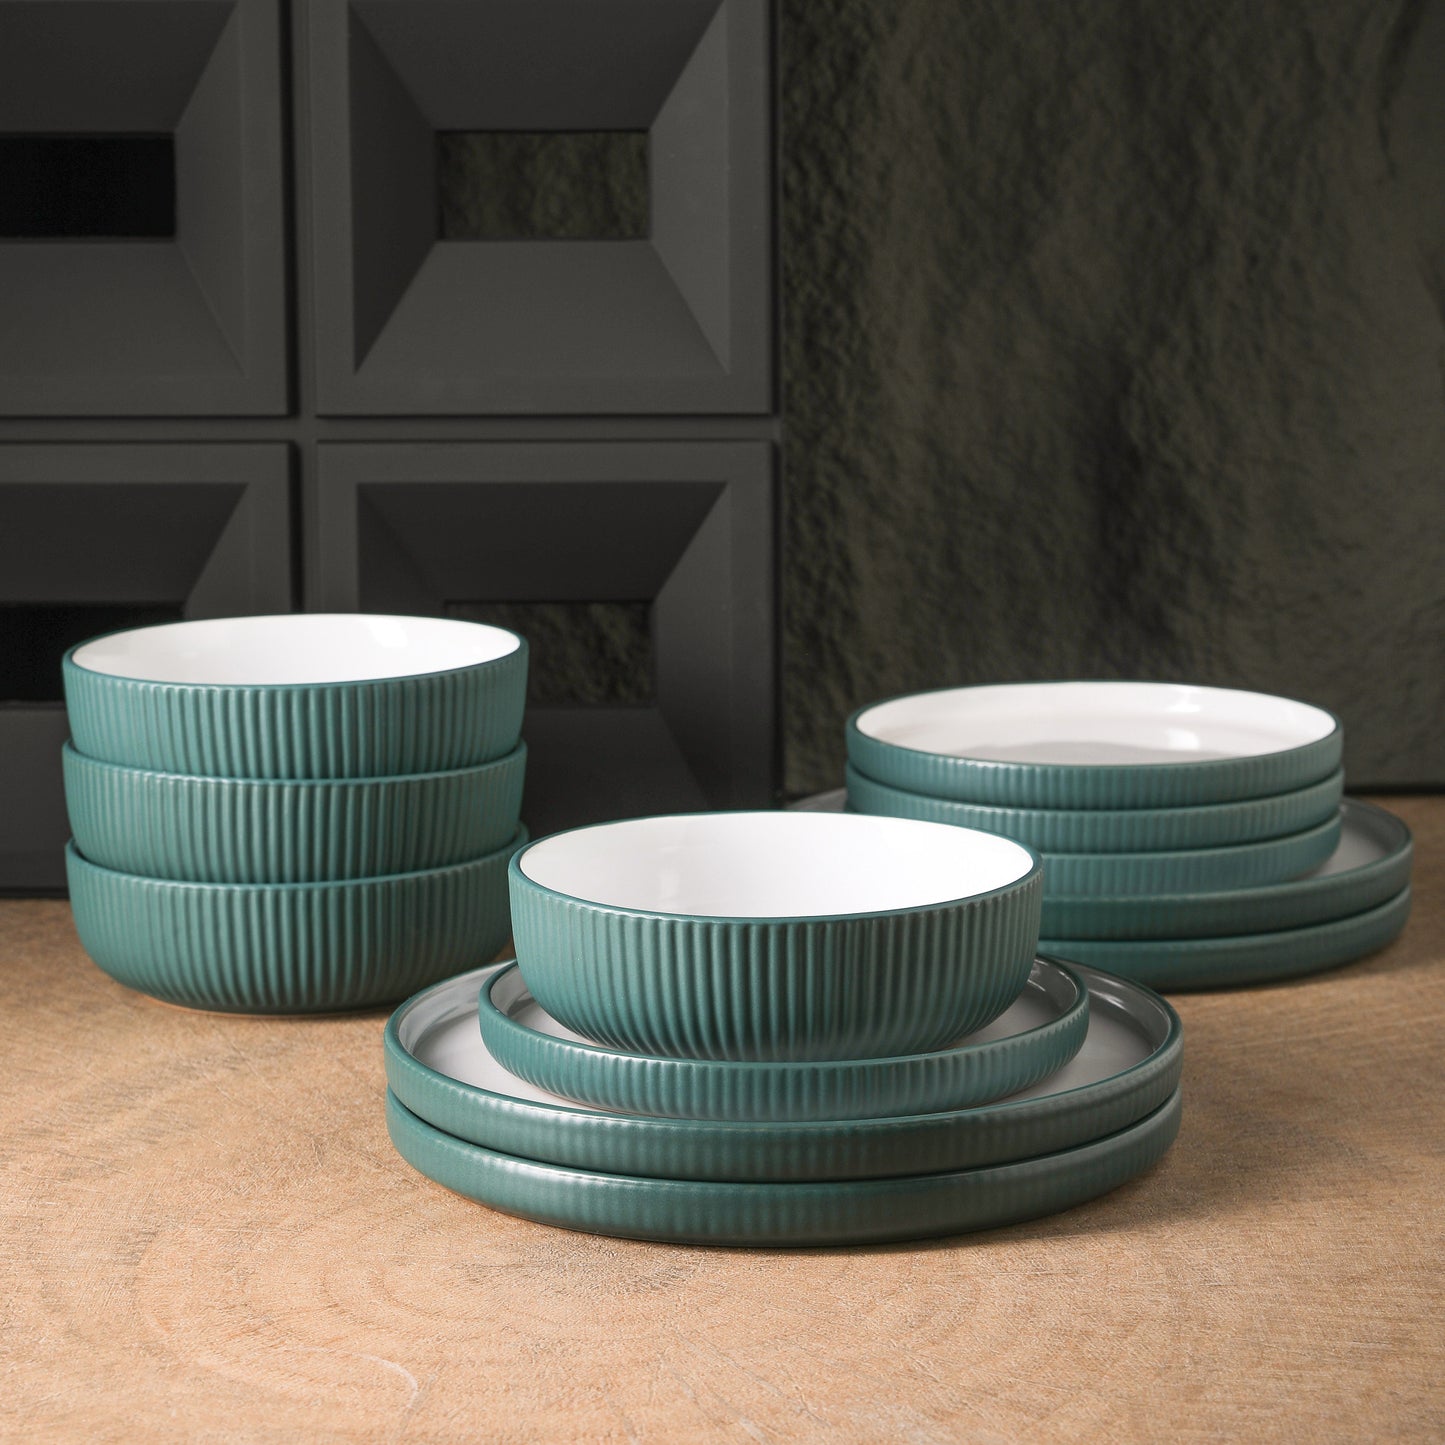 Laro Stoneware Dinnerware Set - Green